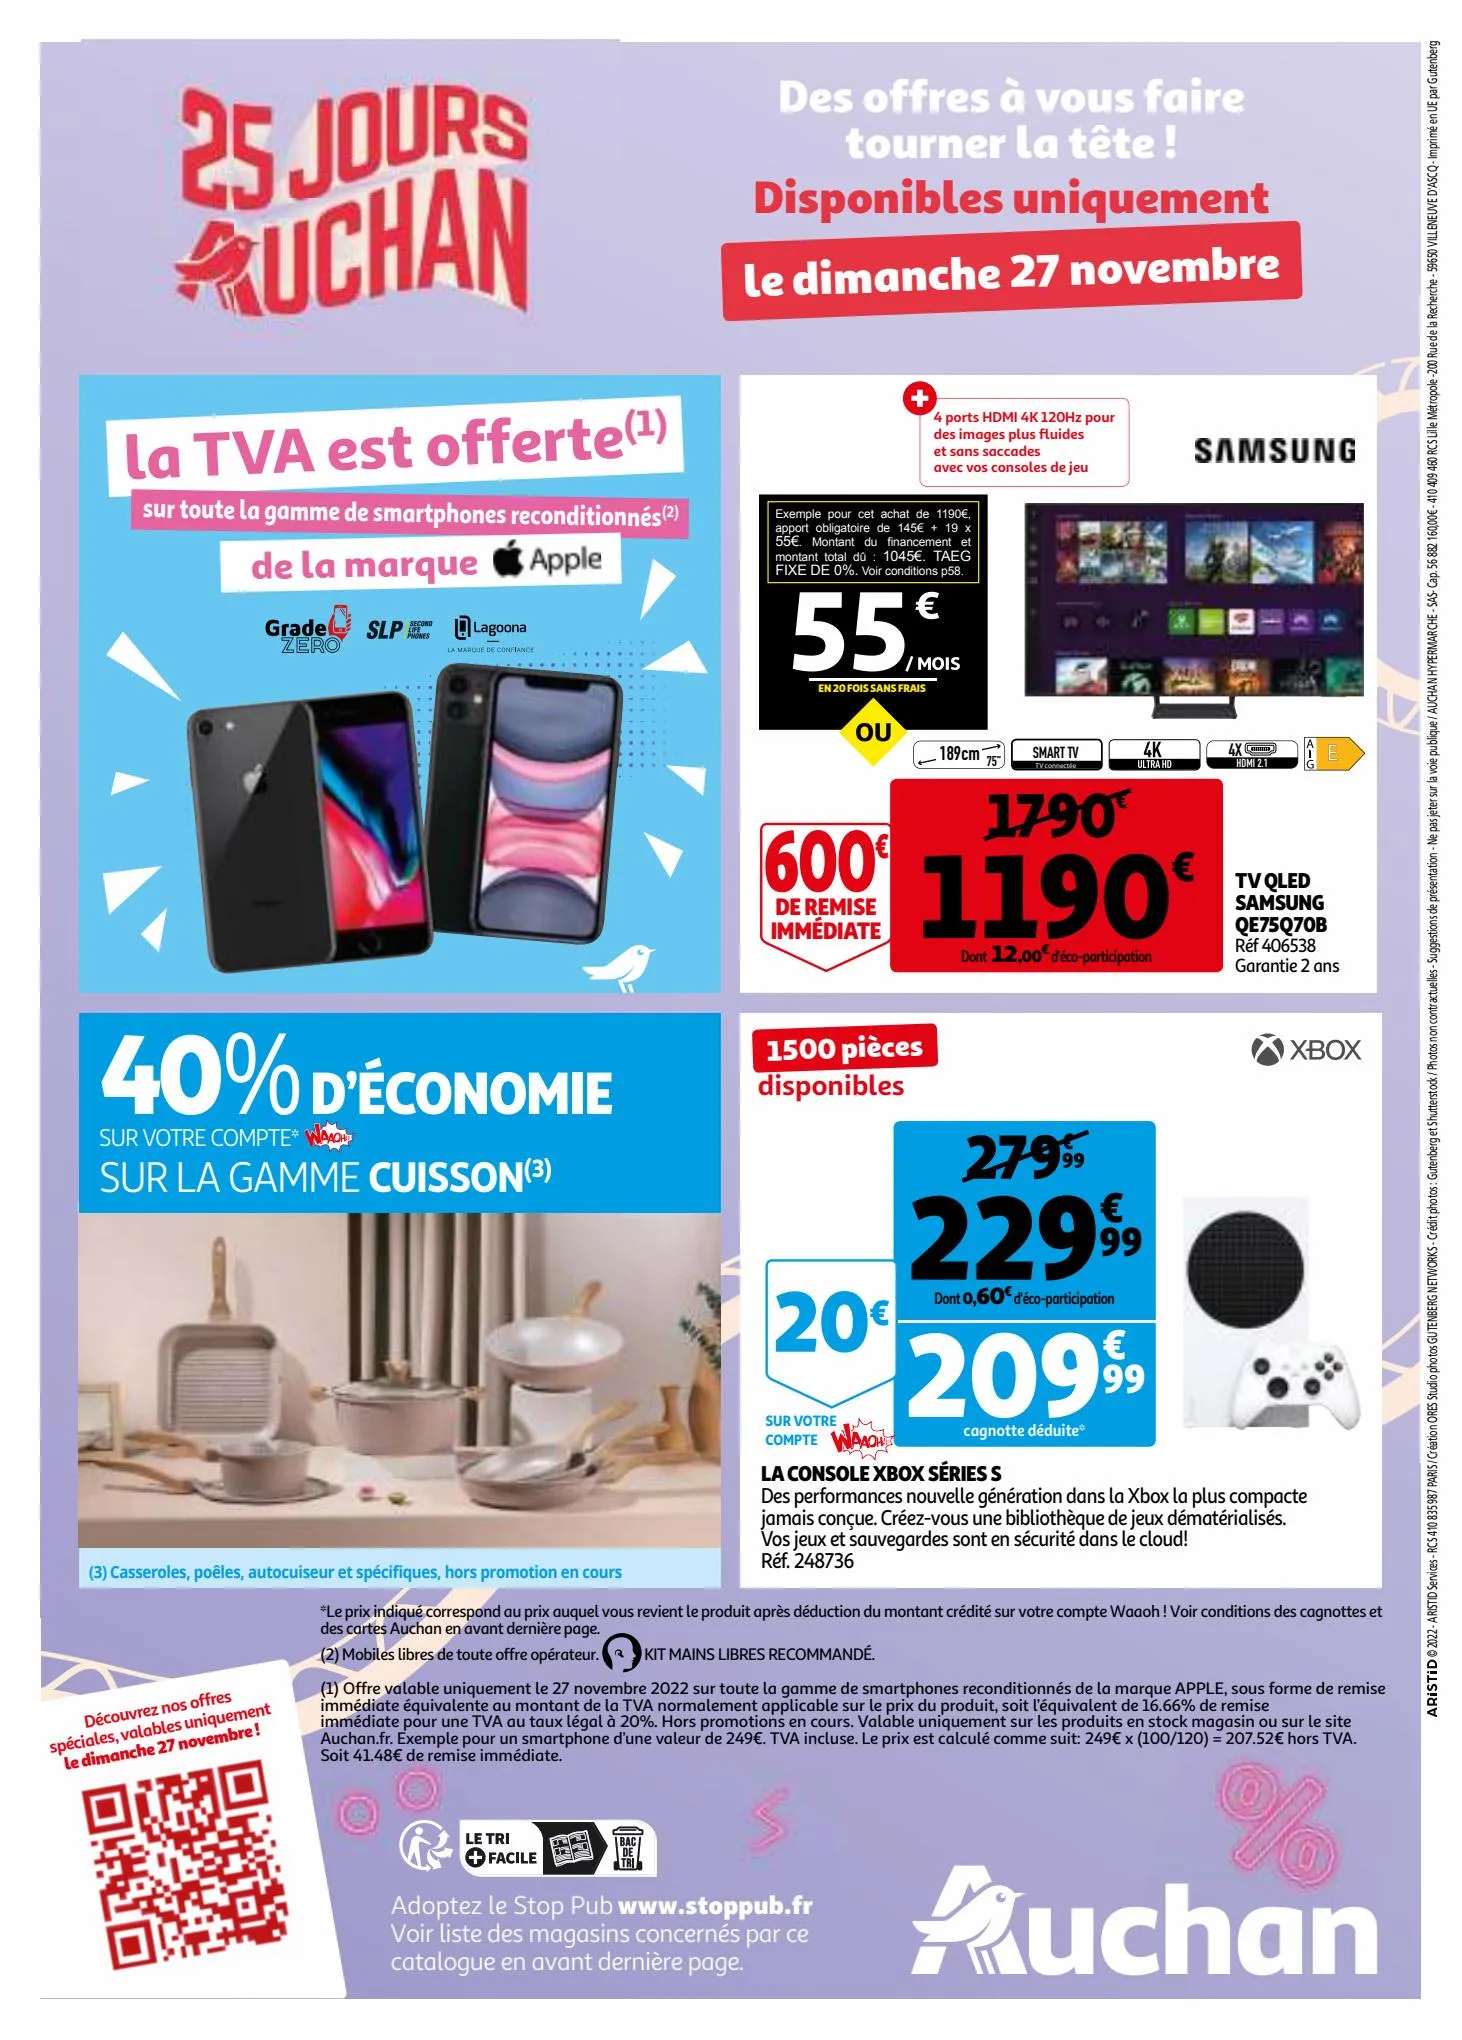 Catalogue 25 jours Auchan, page 00072